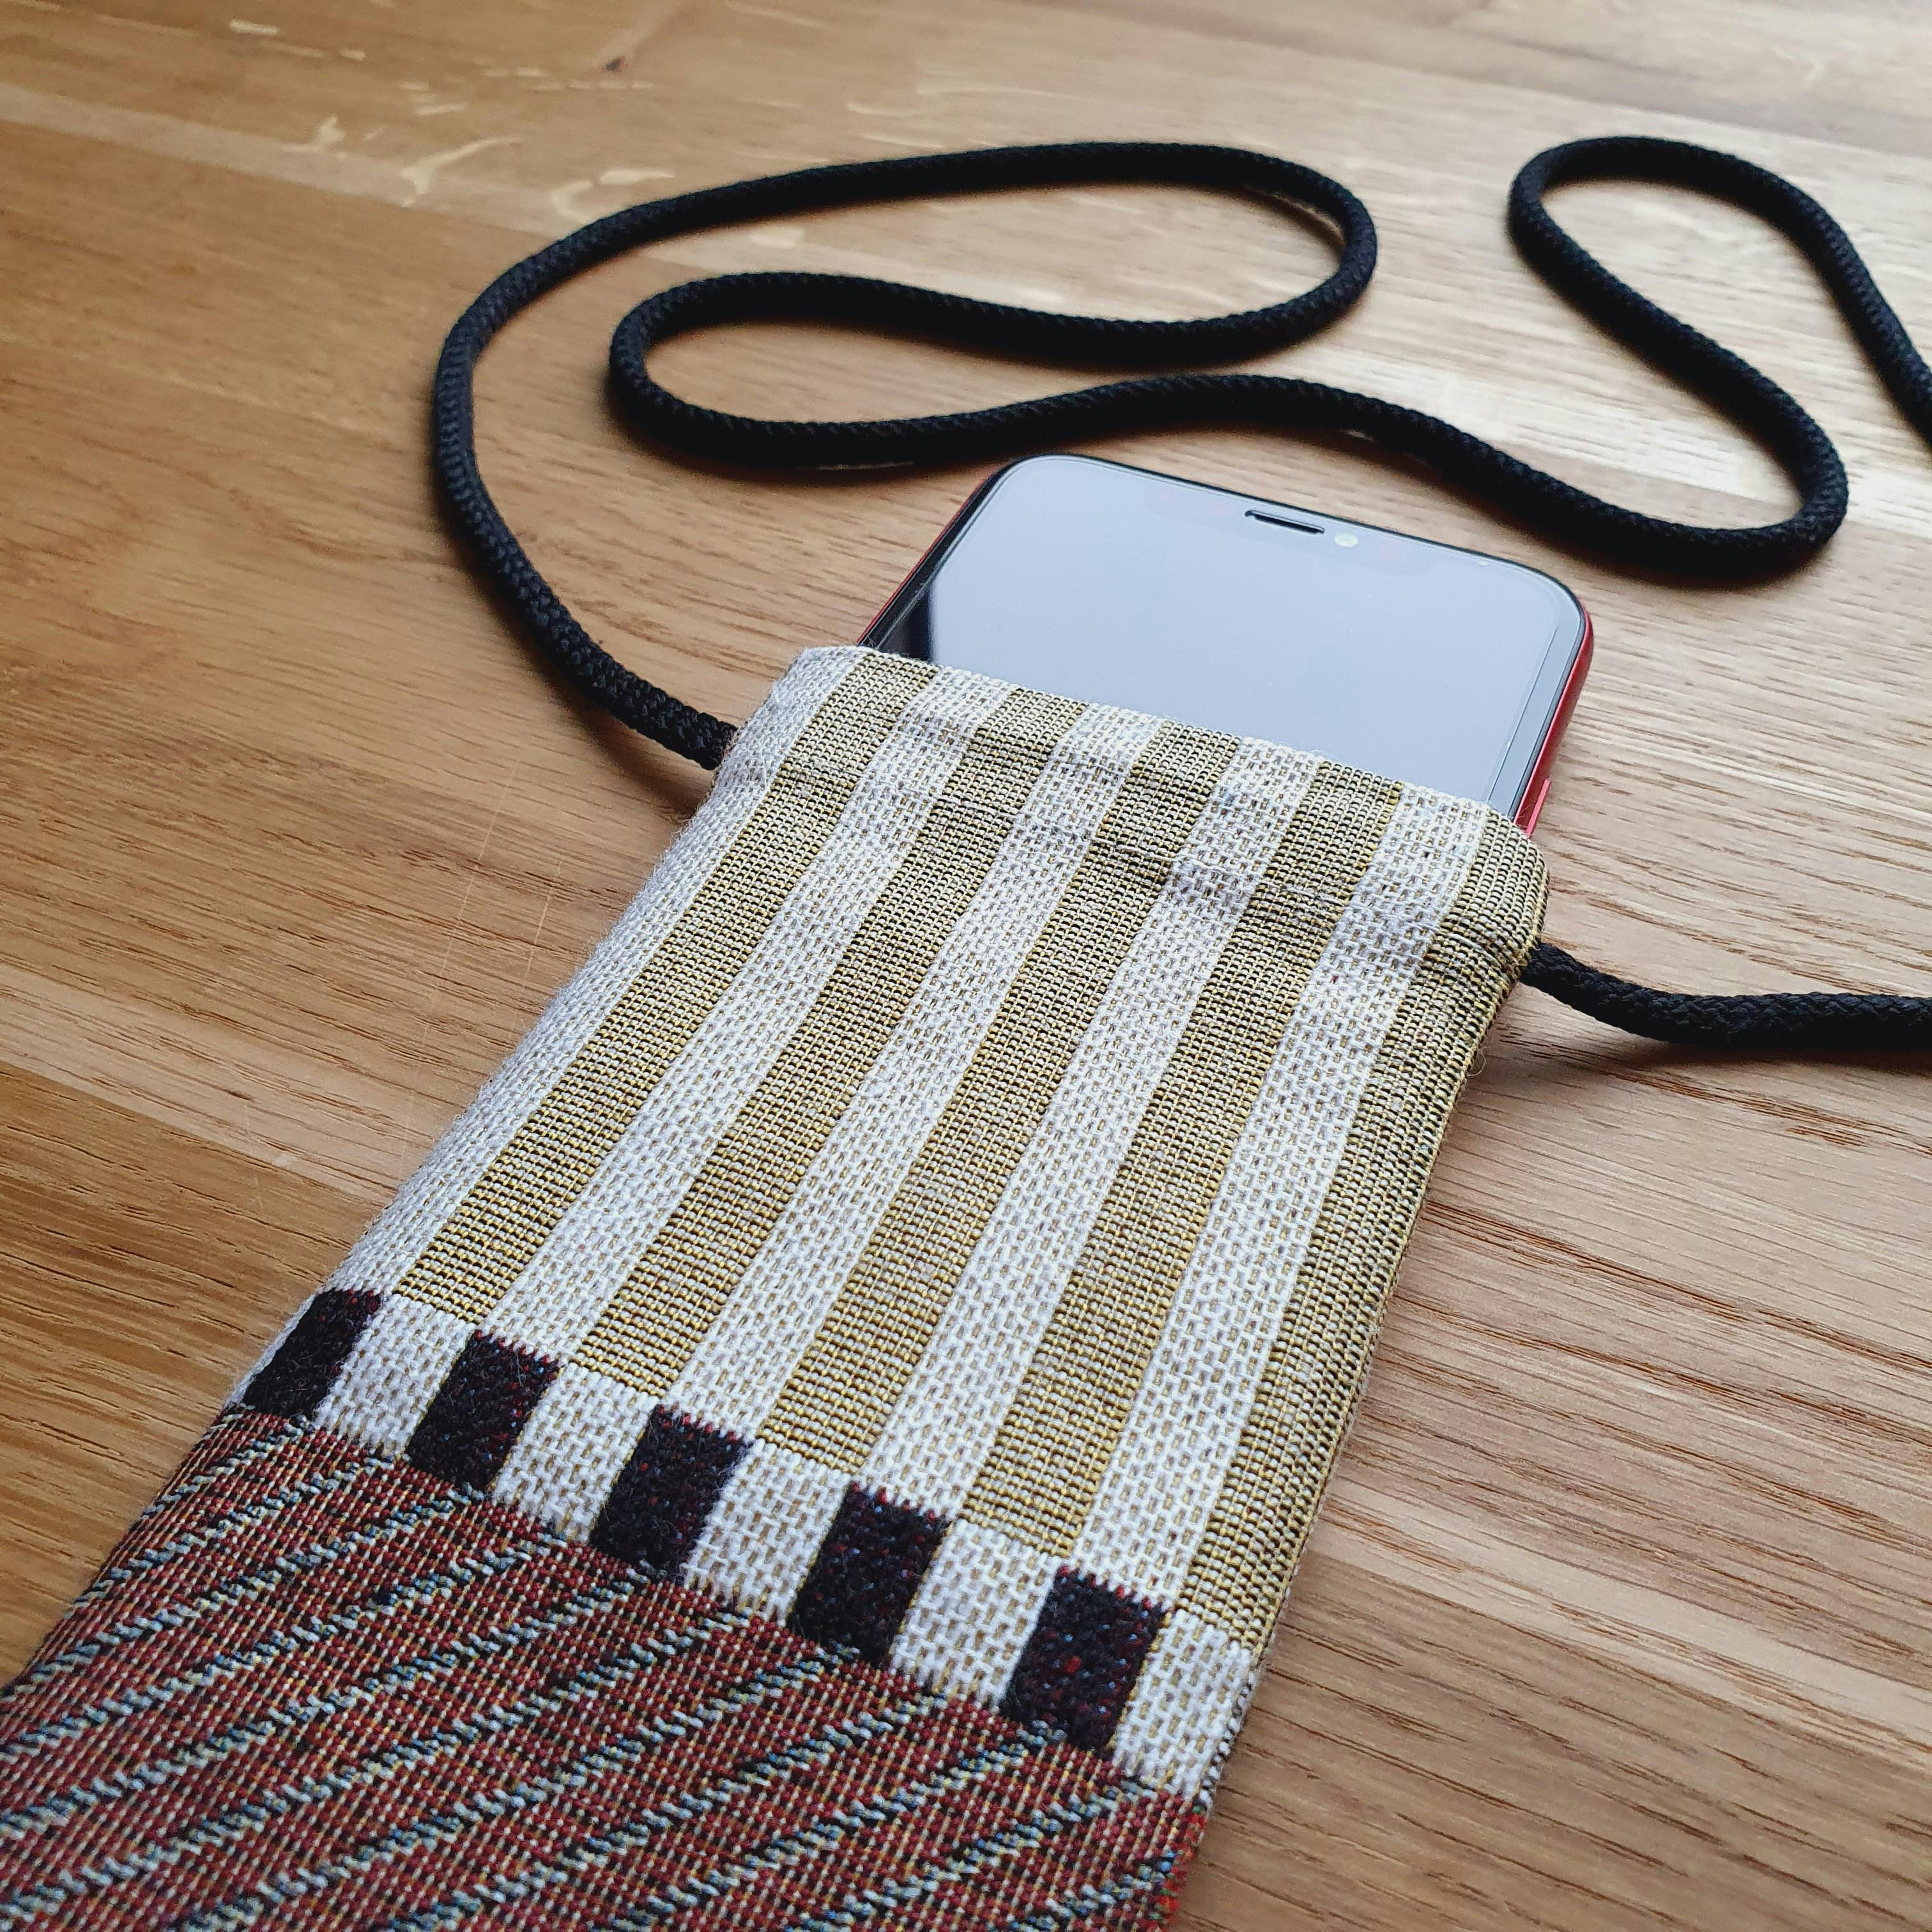 Simple Sewing: Handy iPhone & Smartphone Sleeve
